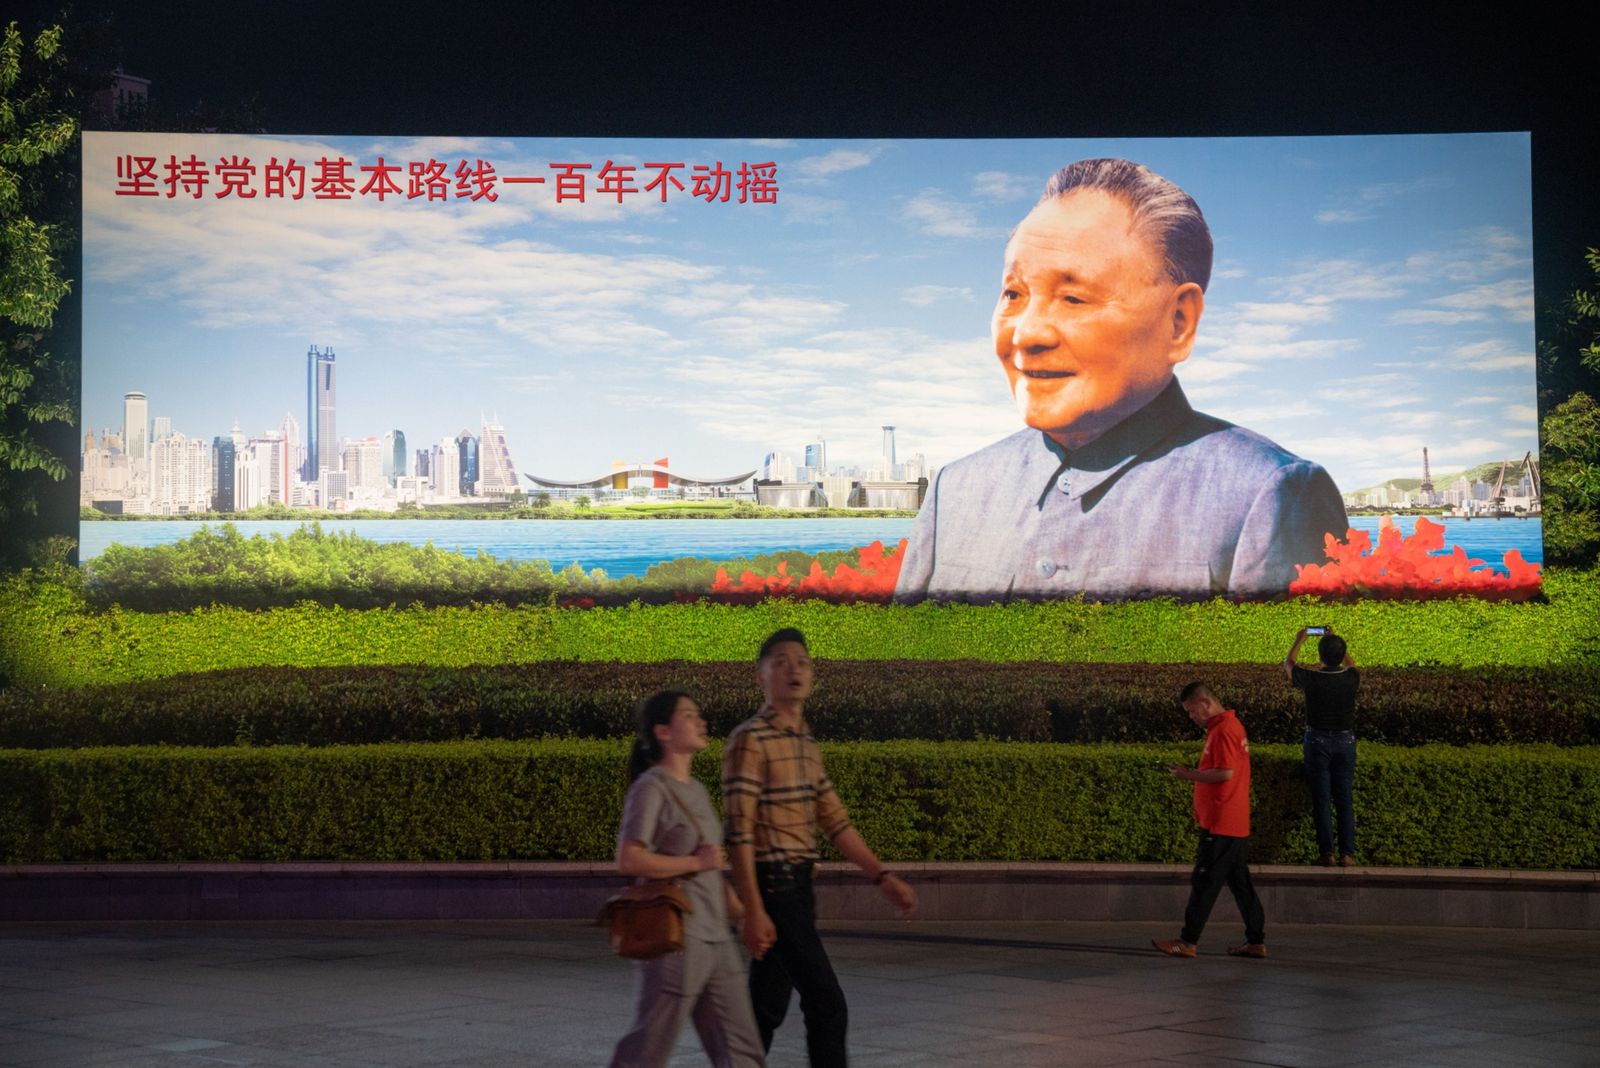 يسيرون في ساحة دينغ شياو بينج في مدينة شنزين الصينية - 19 نوفمبر 2020 - Bloomberg